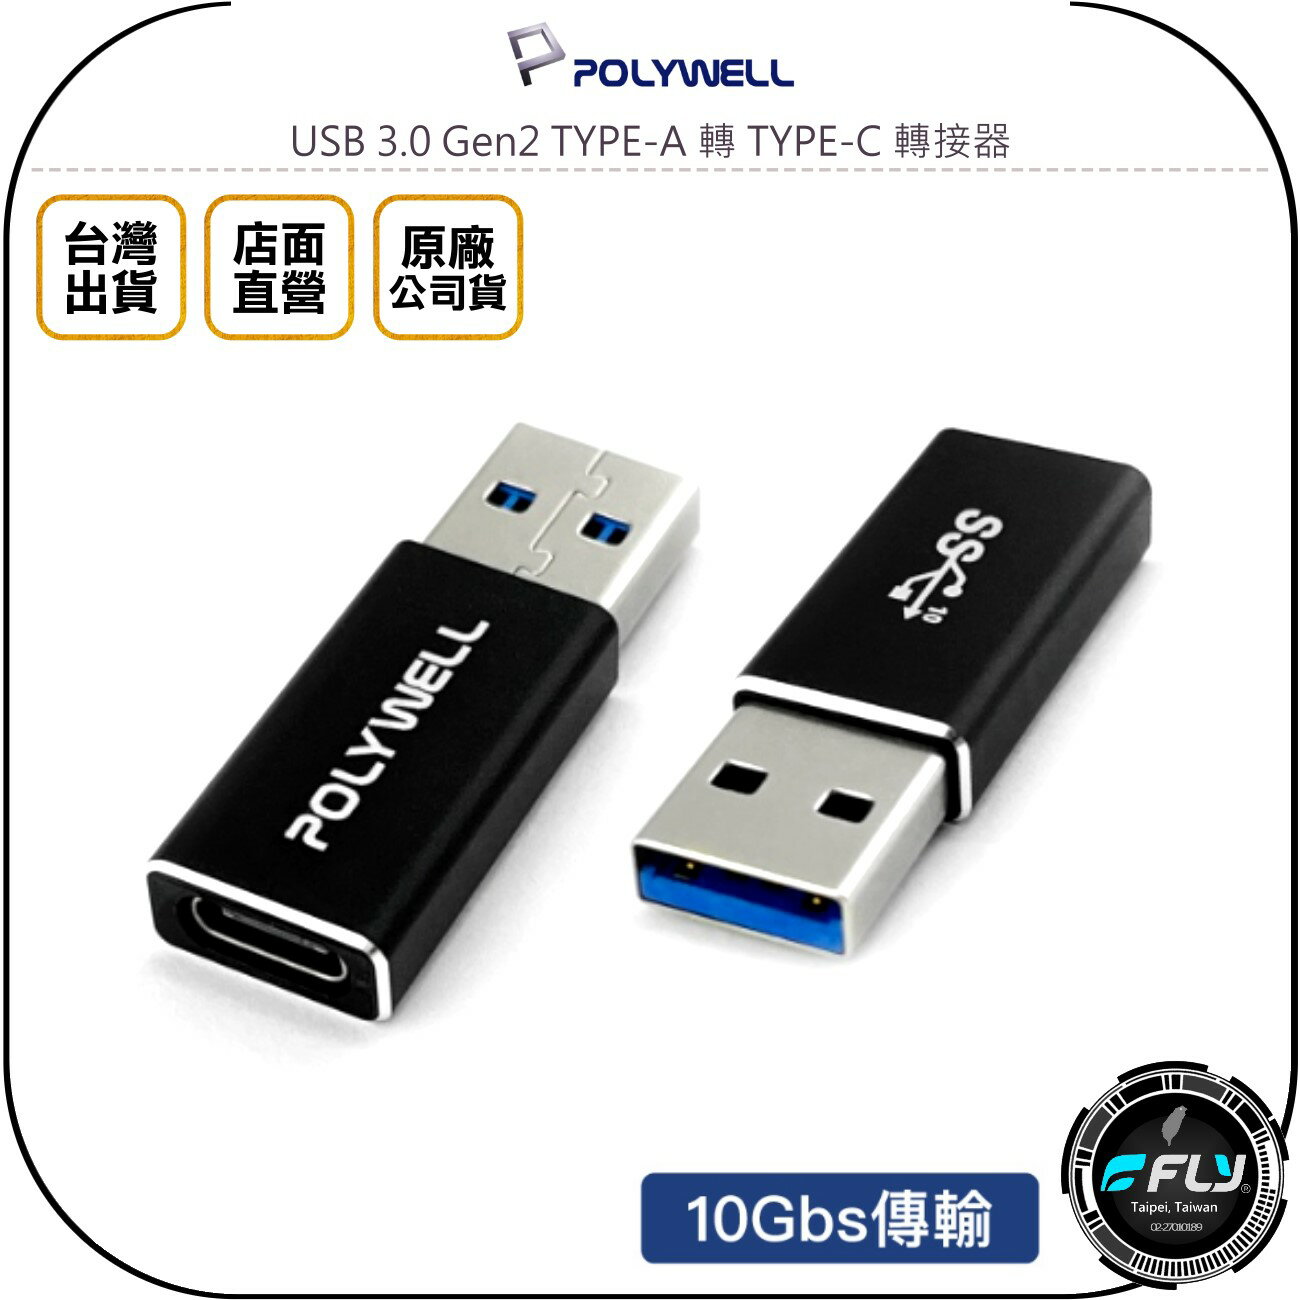 《飛翔無線3C》POLYWELL 寶利威爾 USB 3.0 Gen2 TYPE-A 轉 TYPE-C 轉接器◉公司貨